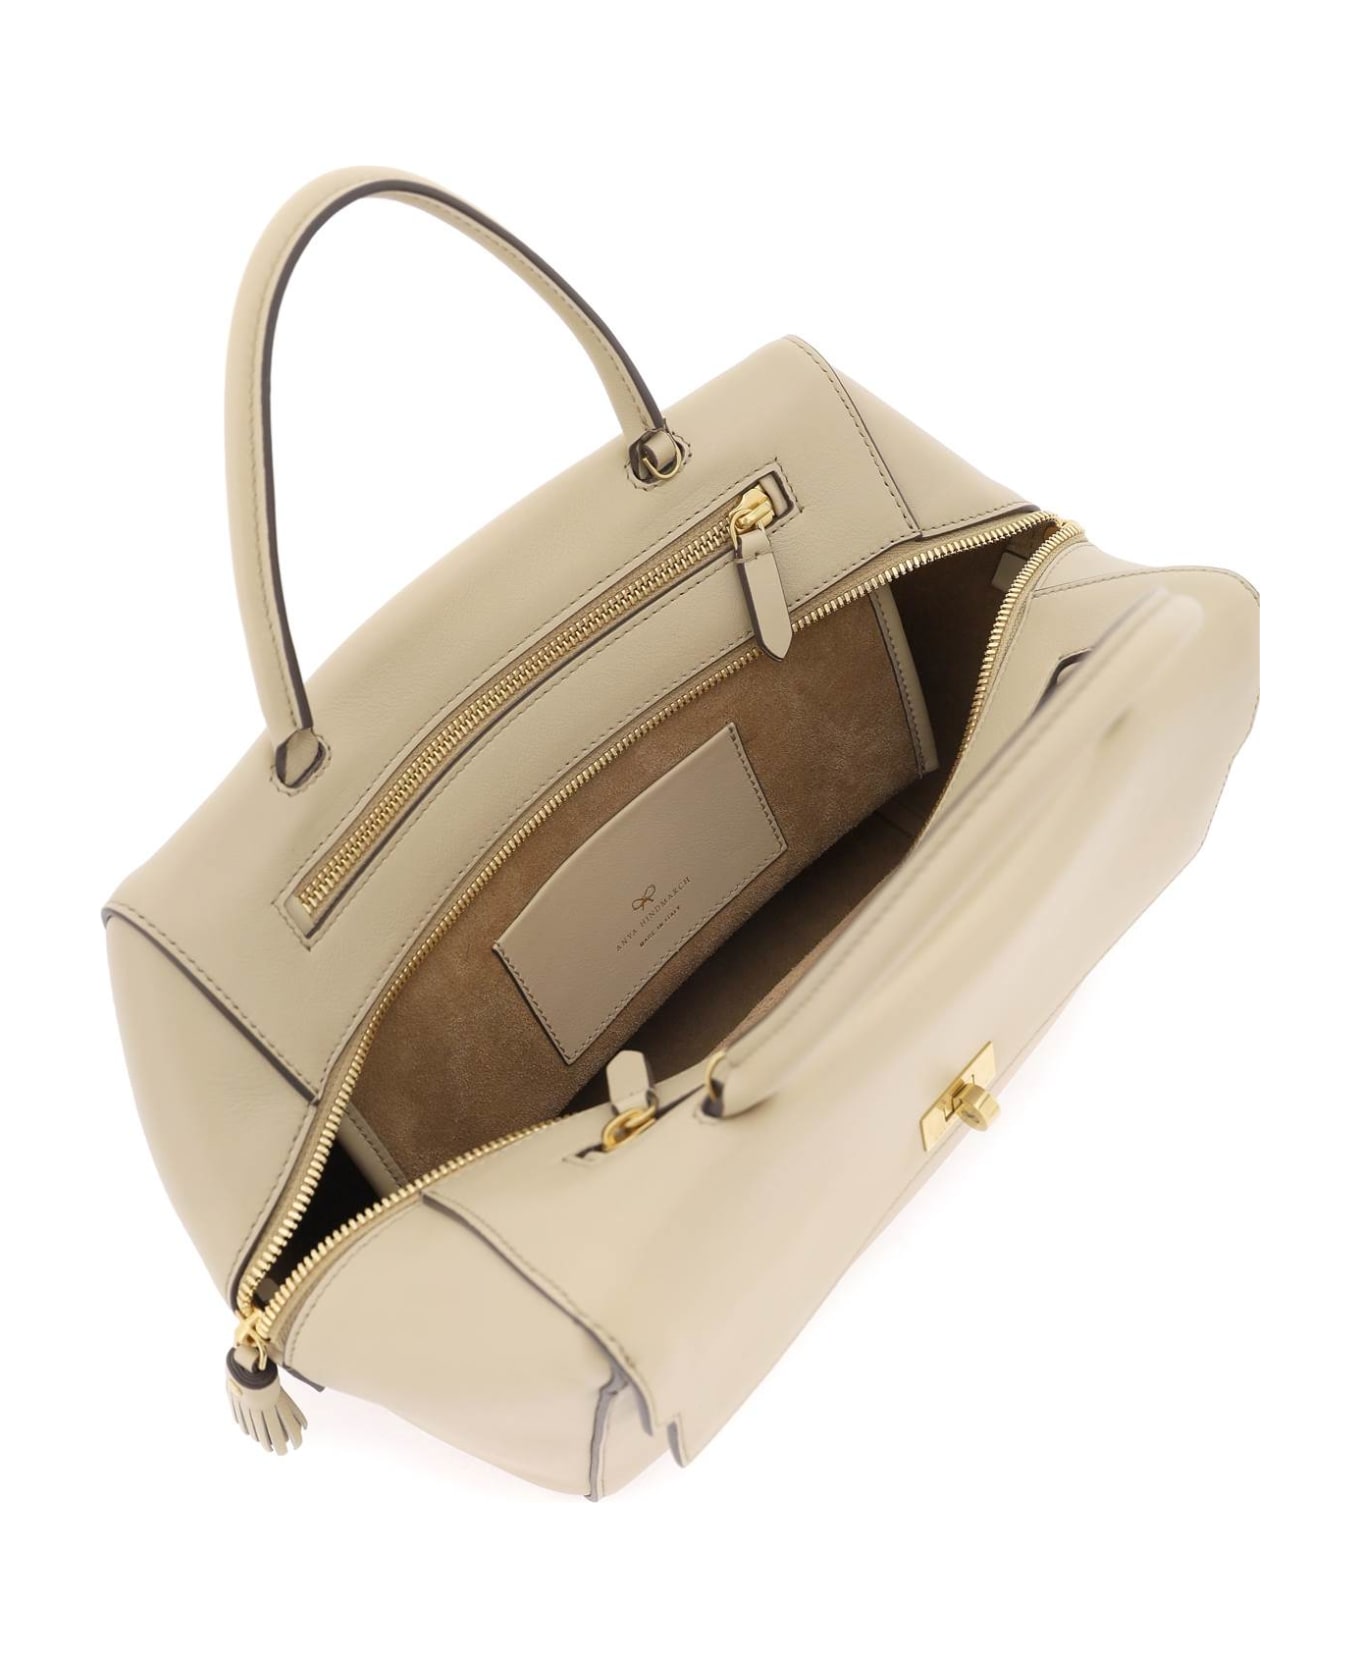 Anya Hindmarch Seaton Handbag - BUFF (Beige)